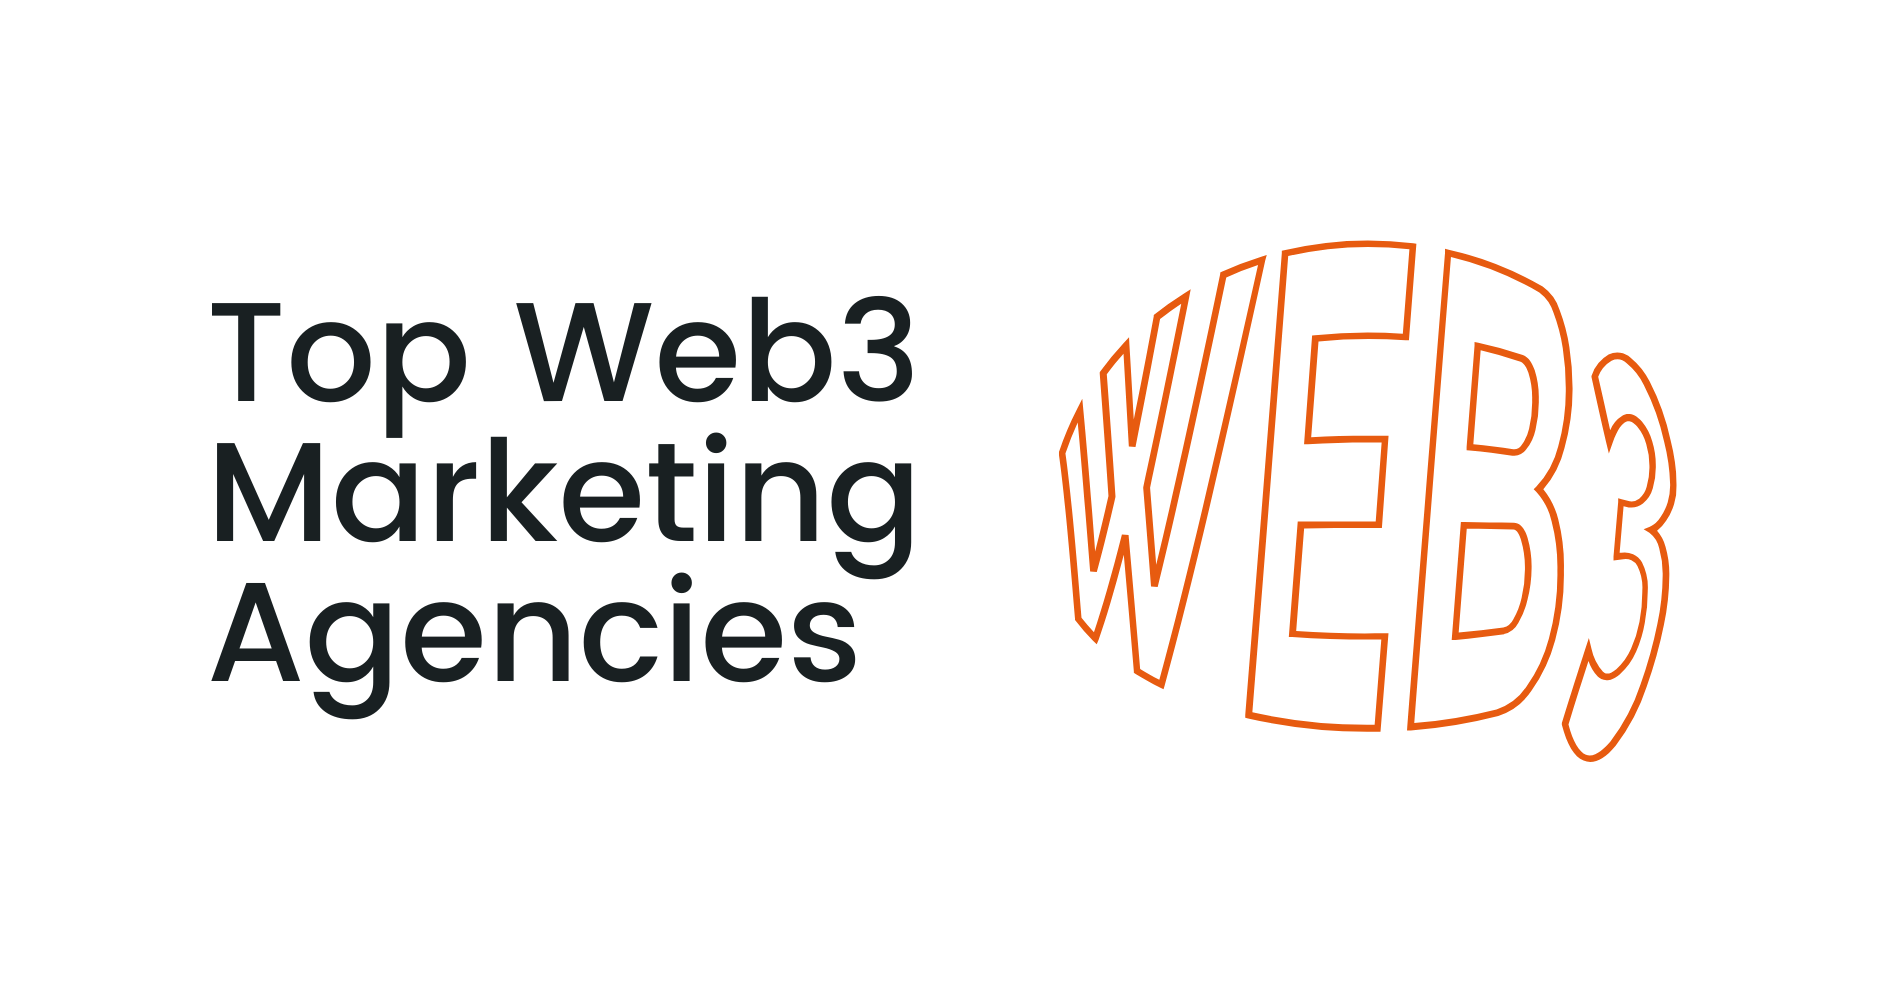 Top Web3 Marketing Agencies